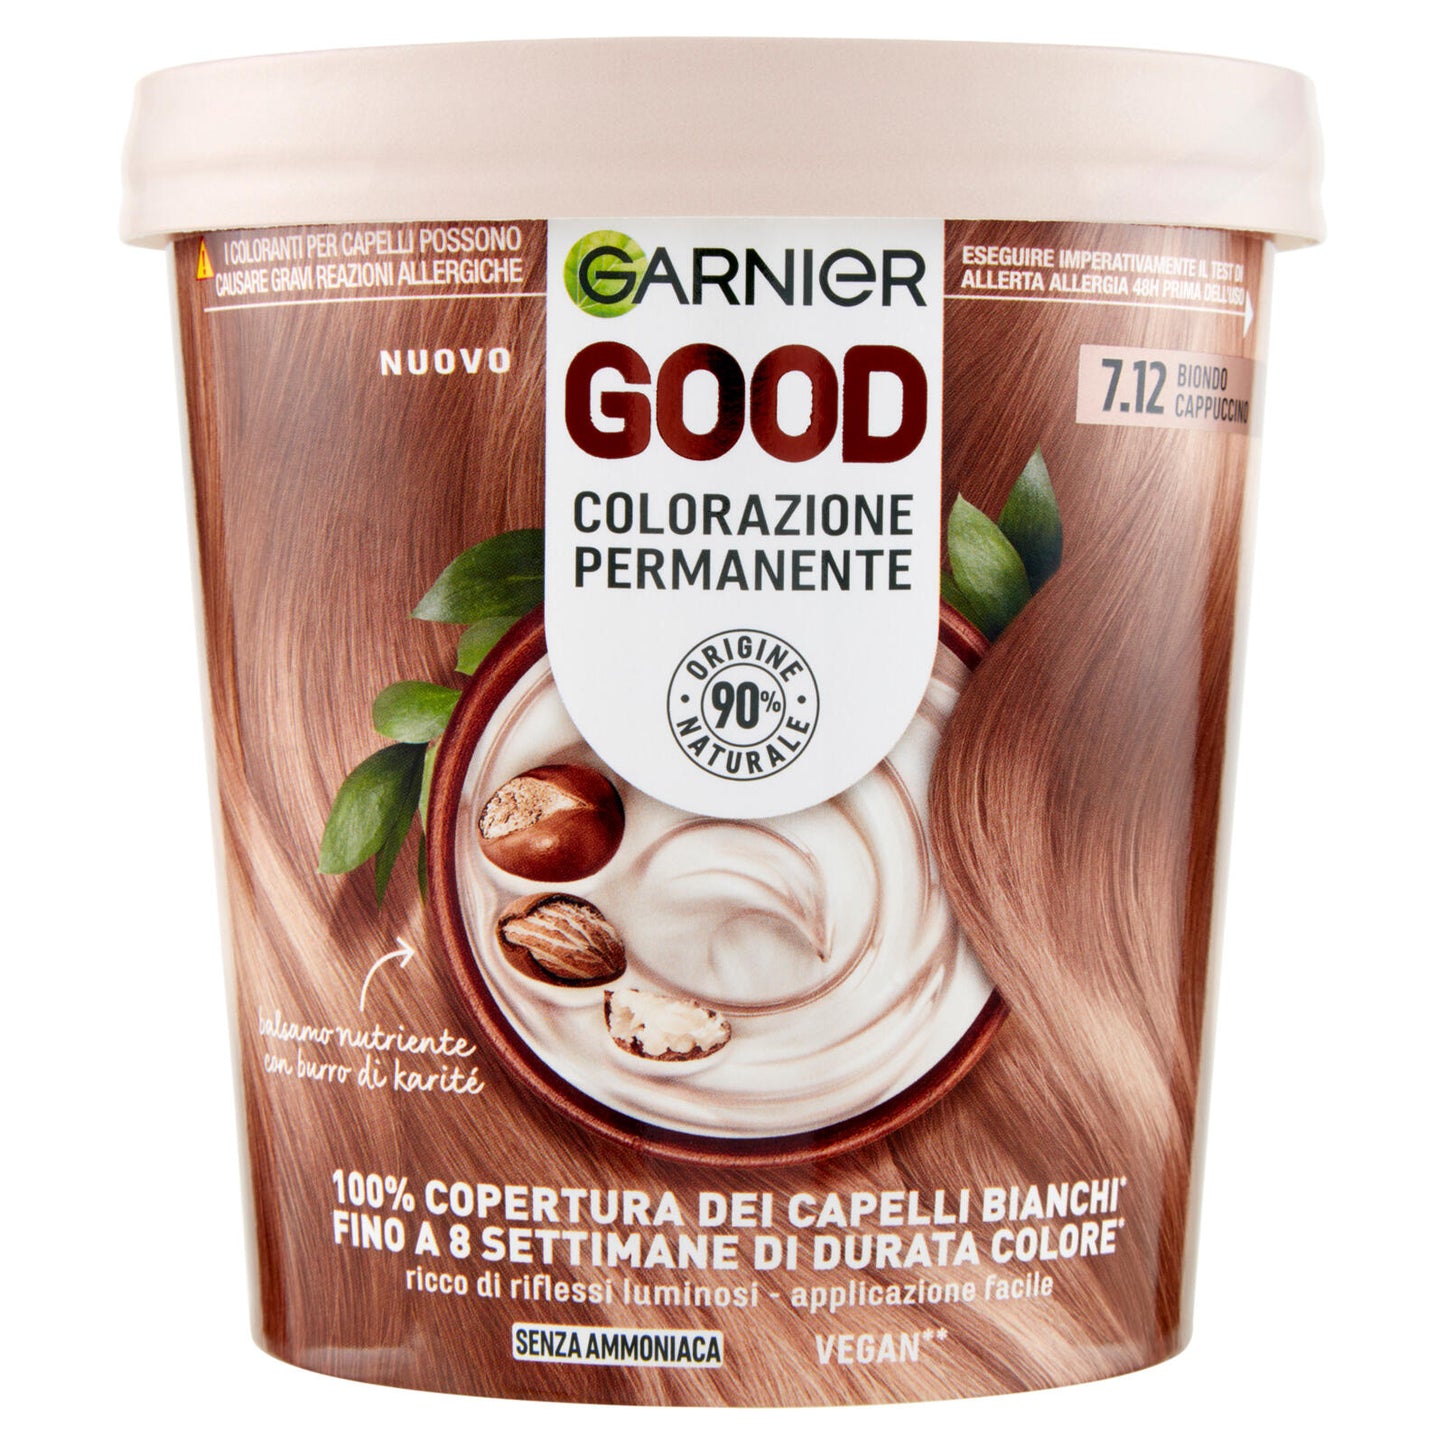 Garnier GOOD 7.12 Biondo Cappuccino, colorazione permanente senza ammoniaca, 90% di origine naturale